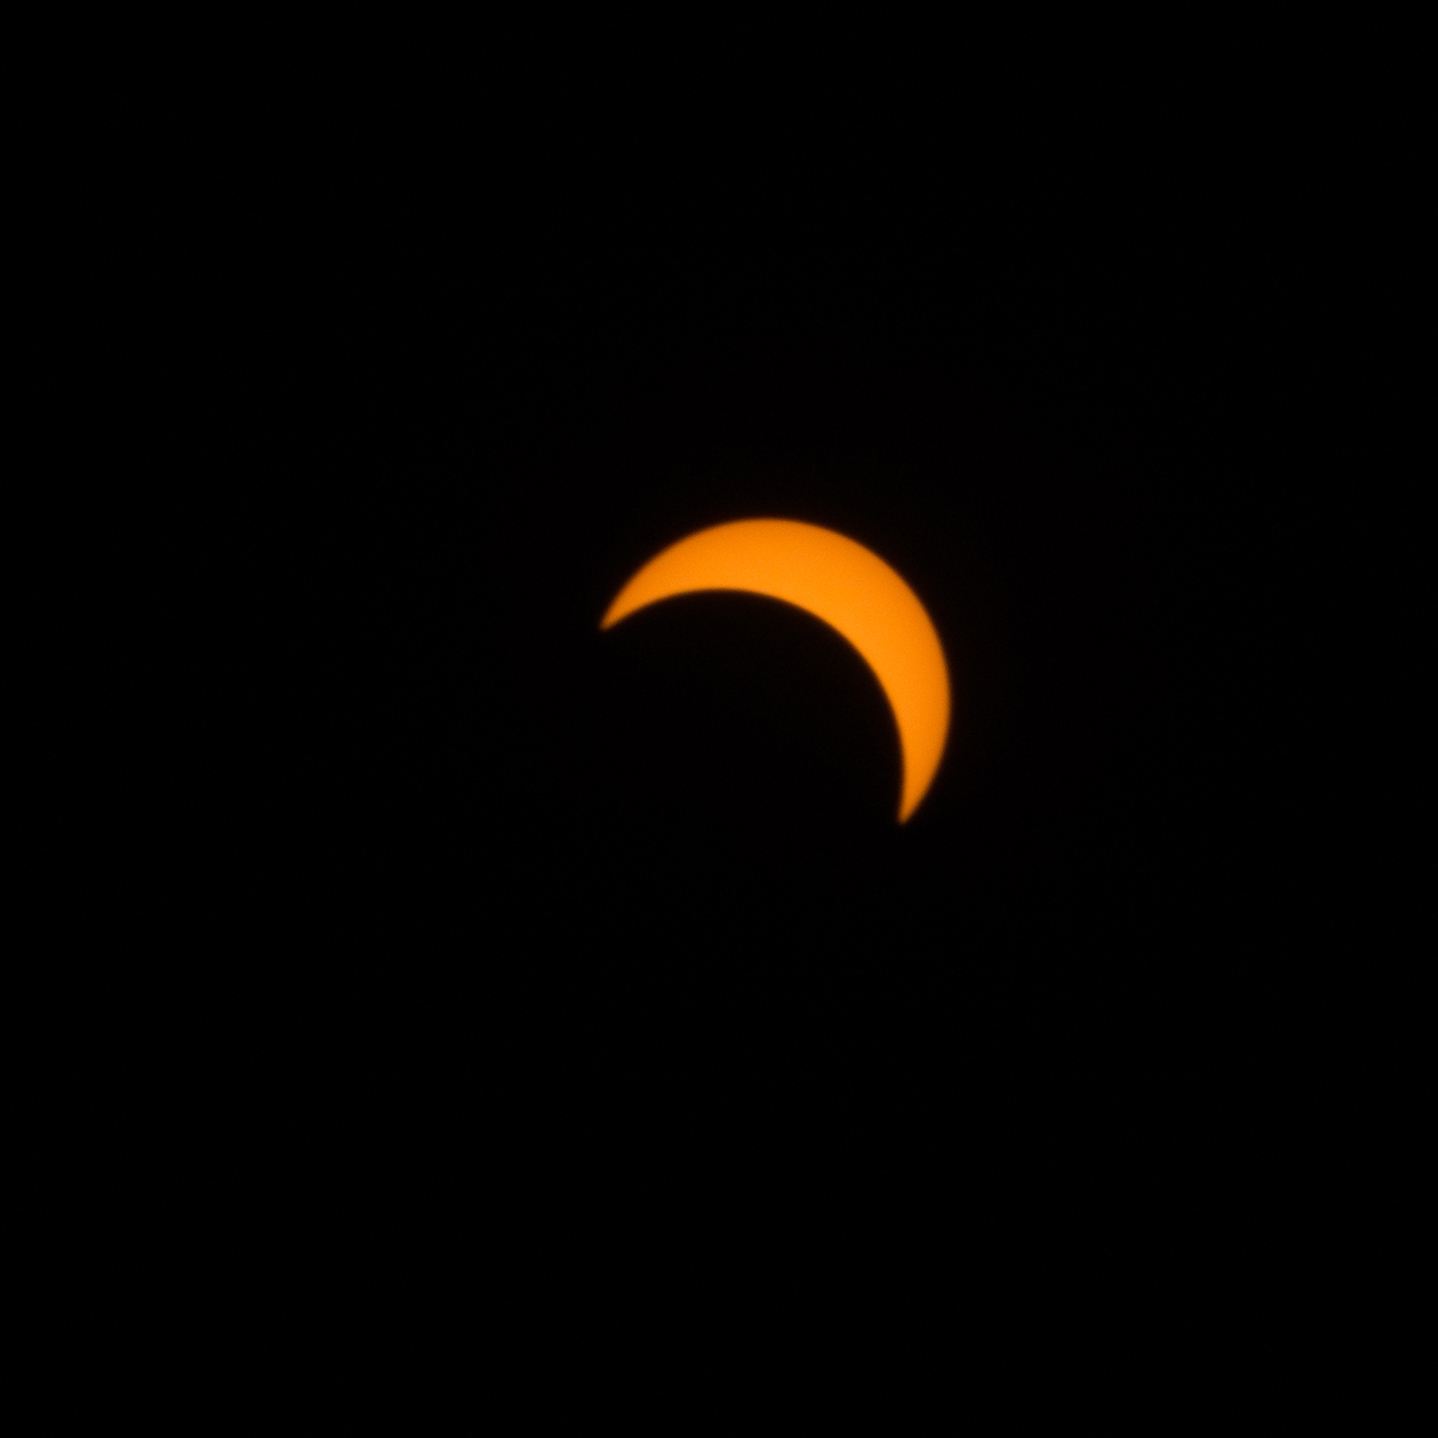 Eclipse de soleil du 21 août 2017